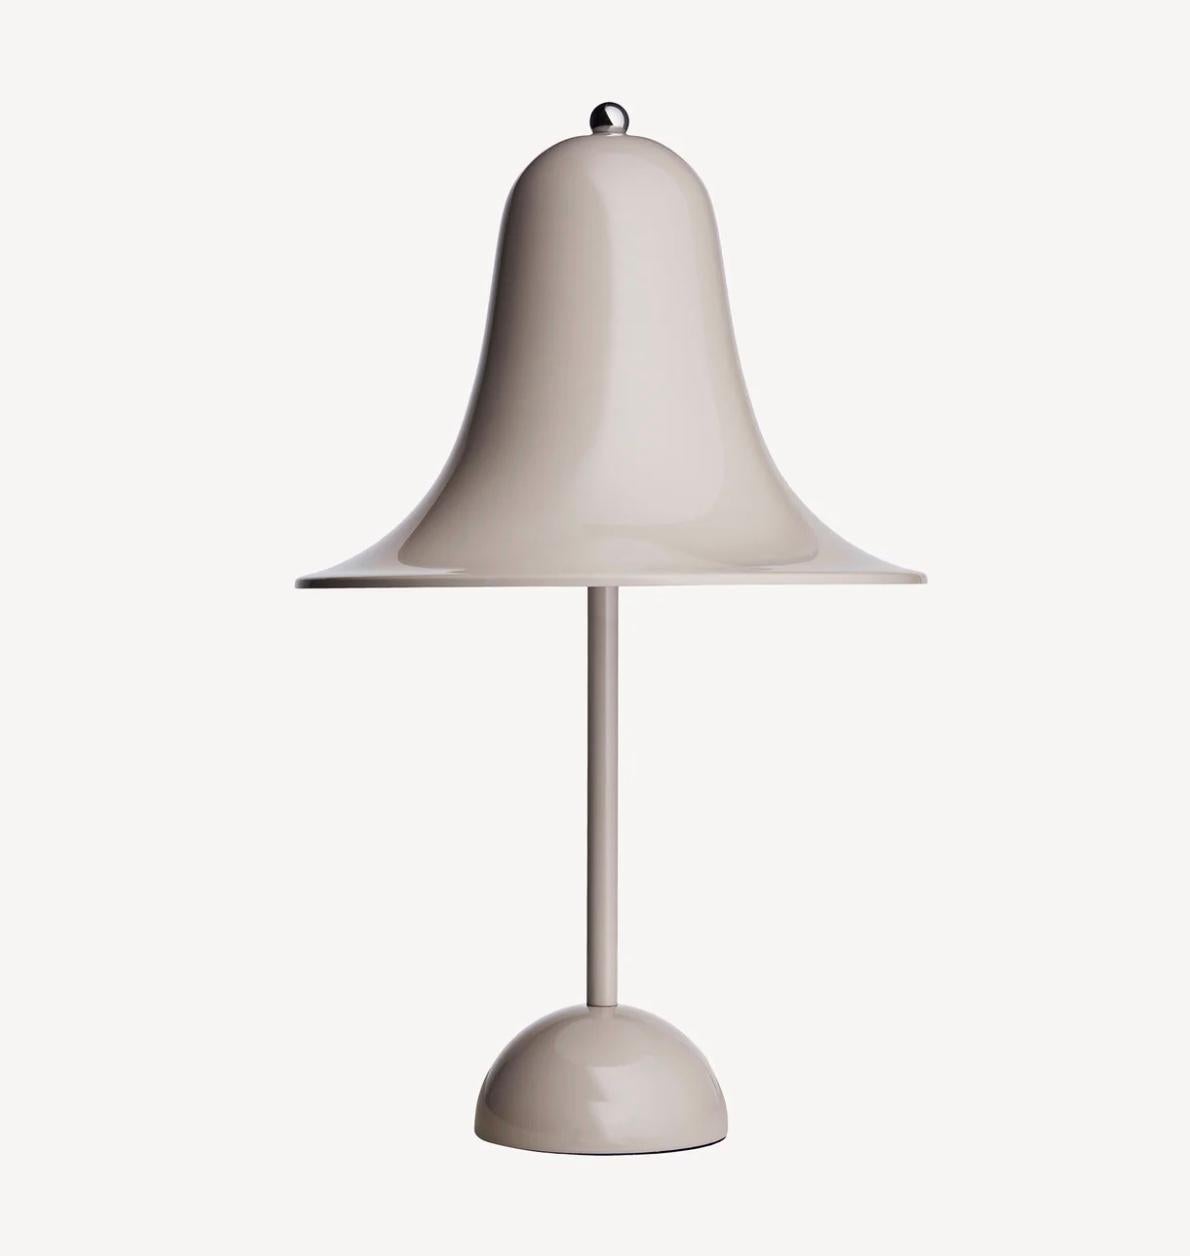 Danish Verner Panton 'Pantop' Table Lamp in 'Grey Sand' 1980 for Verpan For Sale